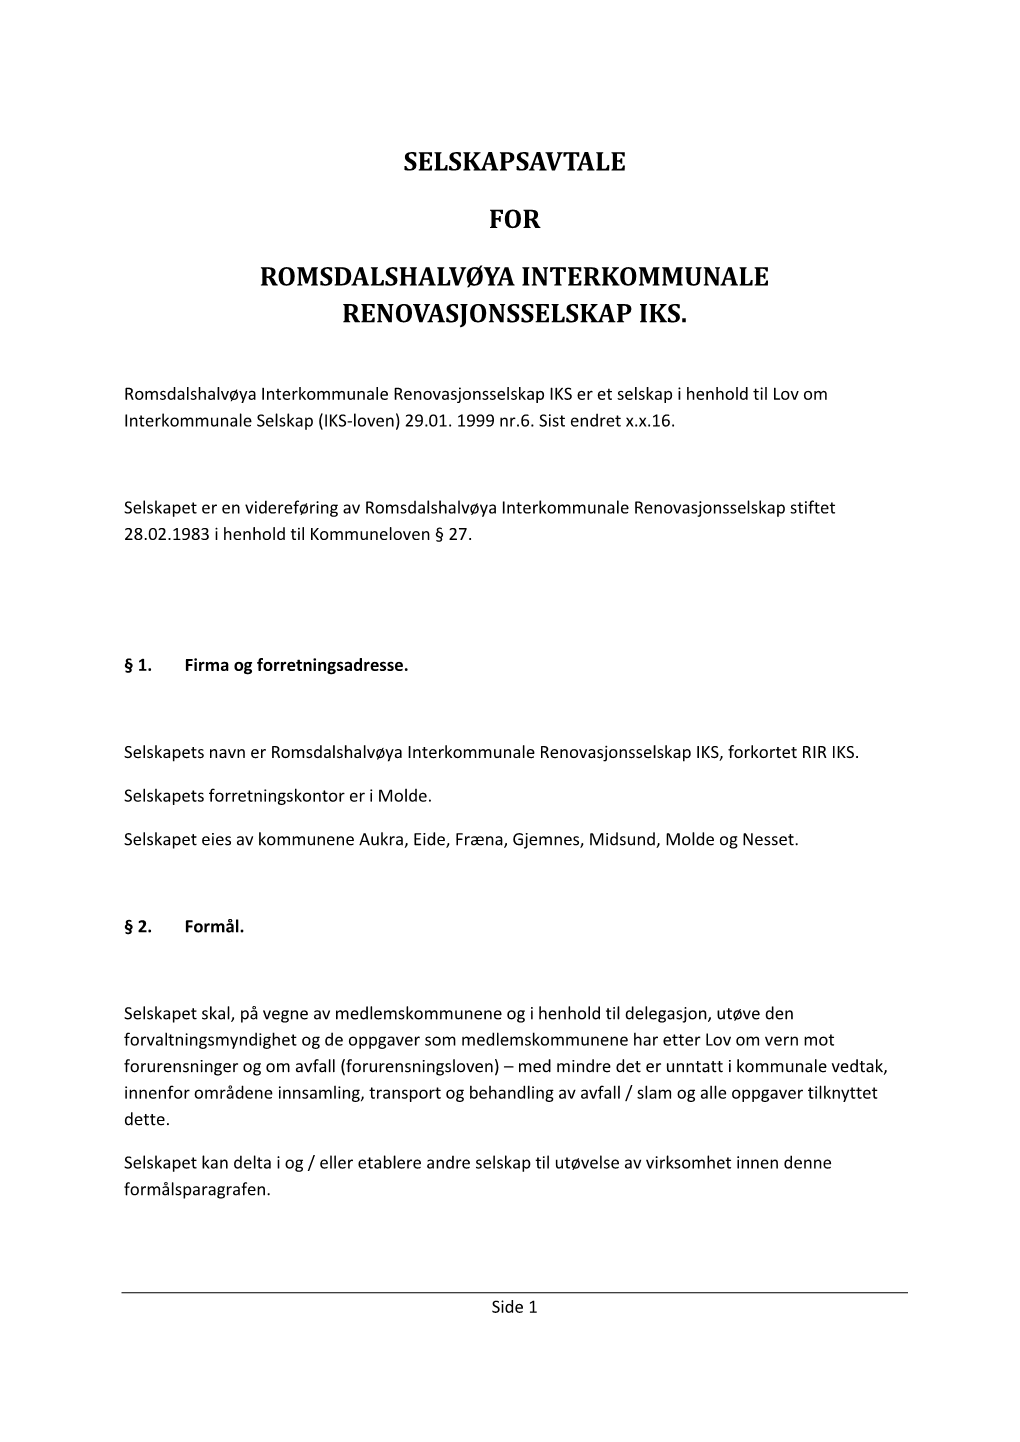 Selskapsavtale for Romsdalshalvøya Interkommunale